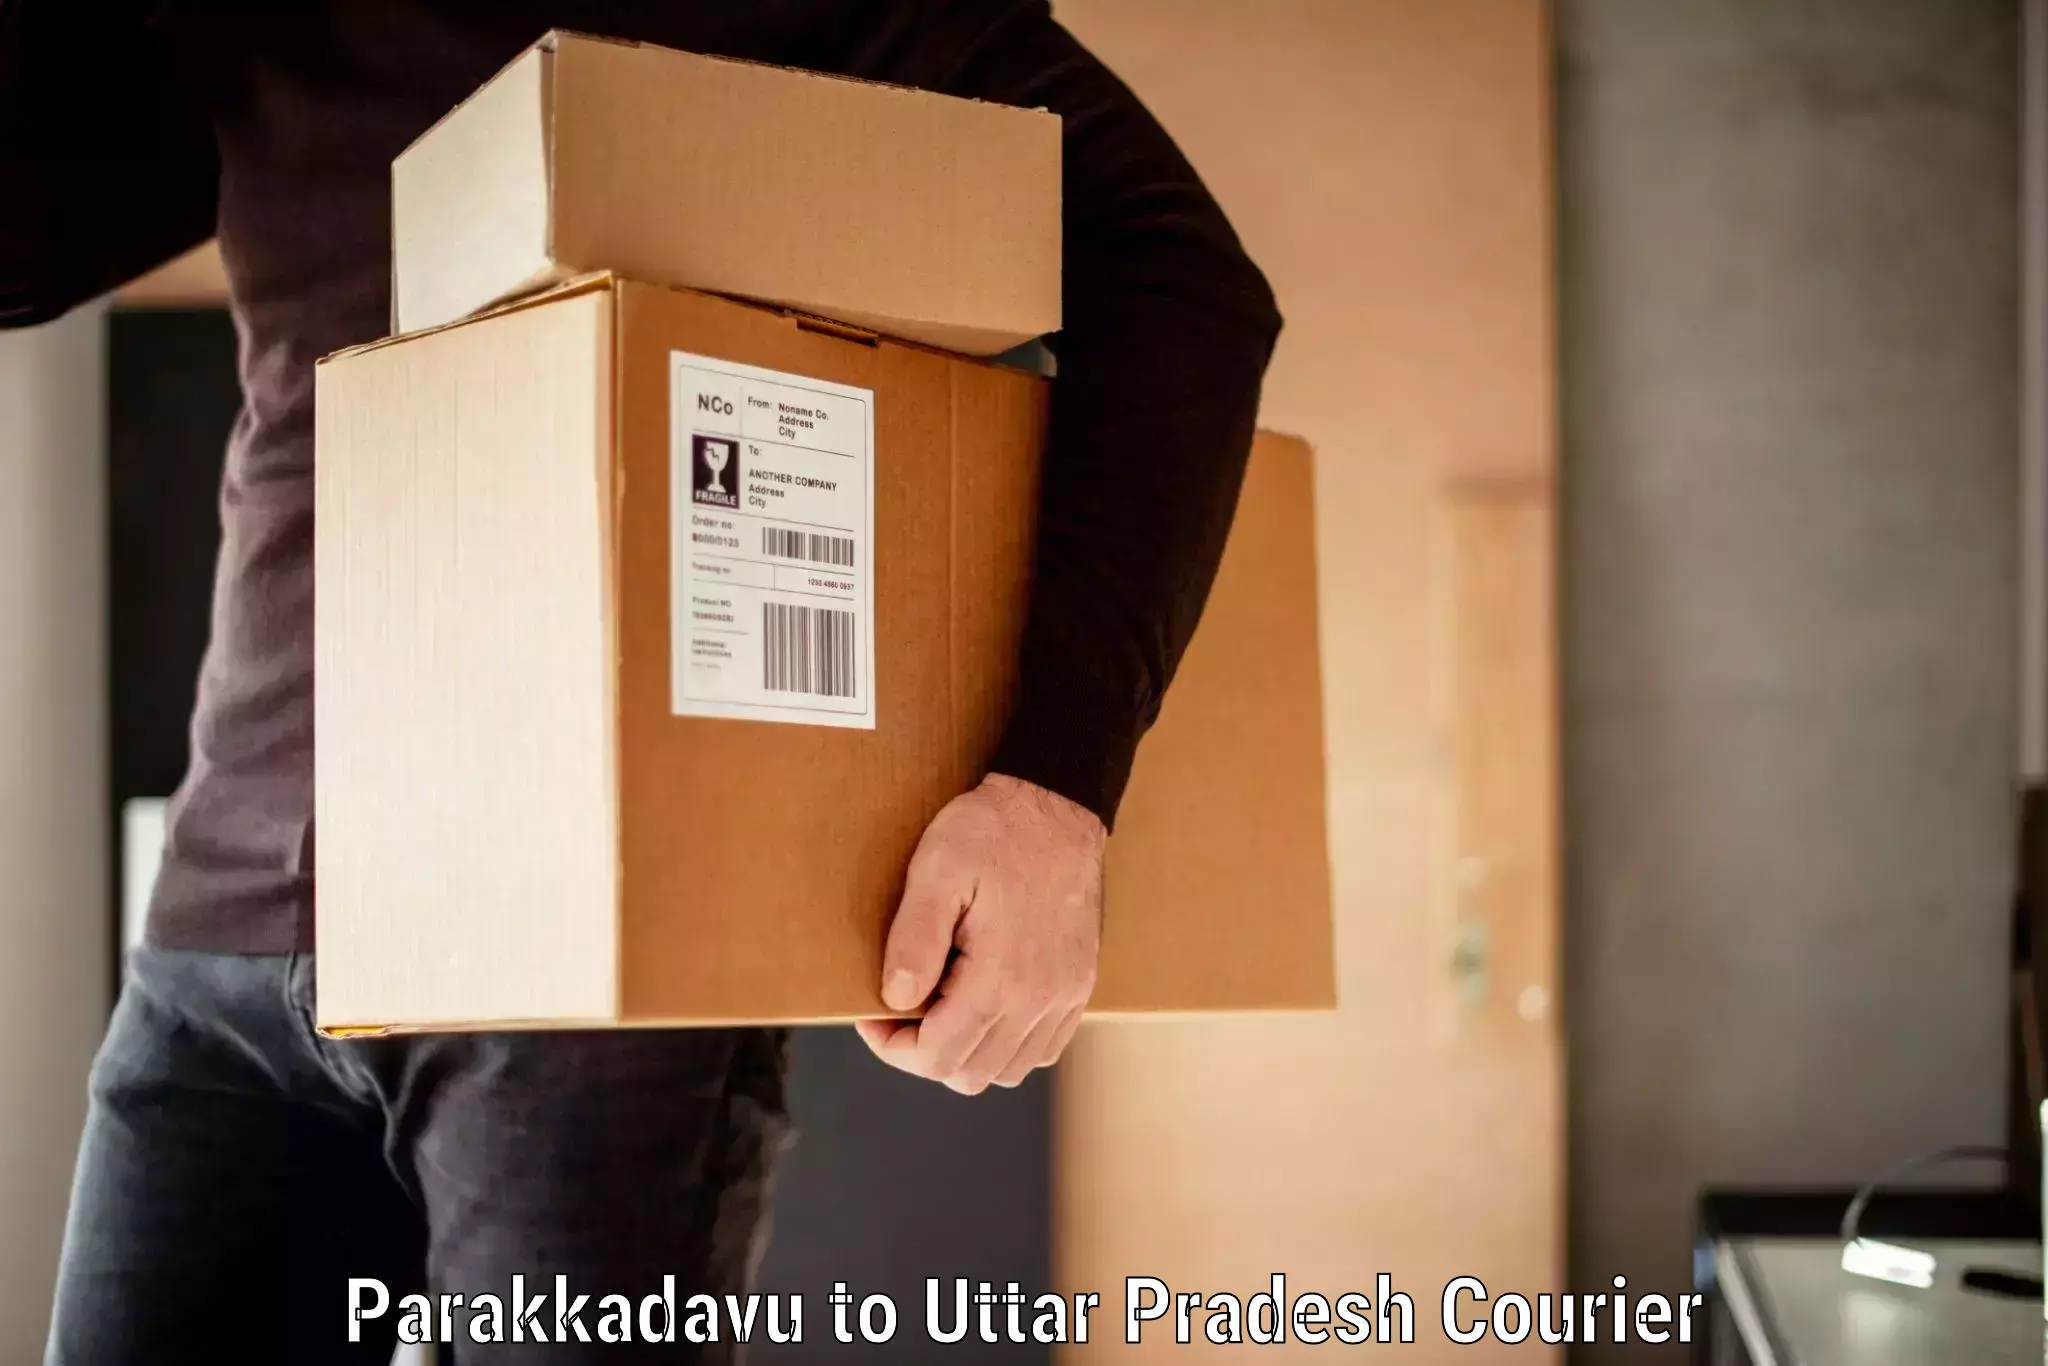 Digital baggage courier Parakkadavu to Uttar Pradesh